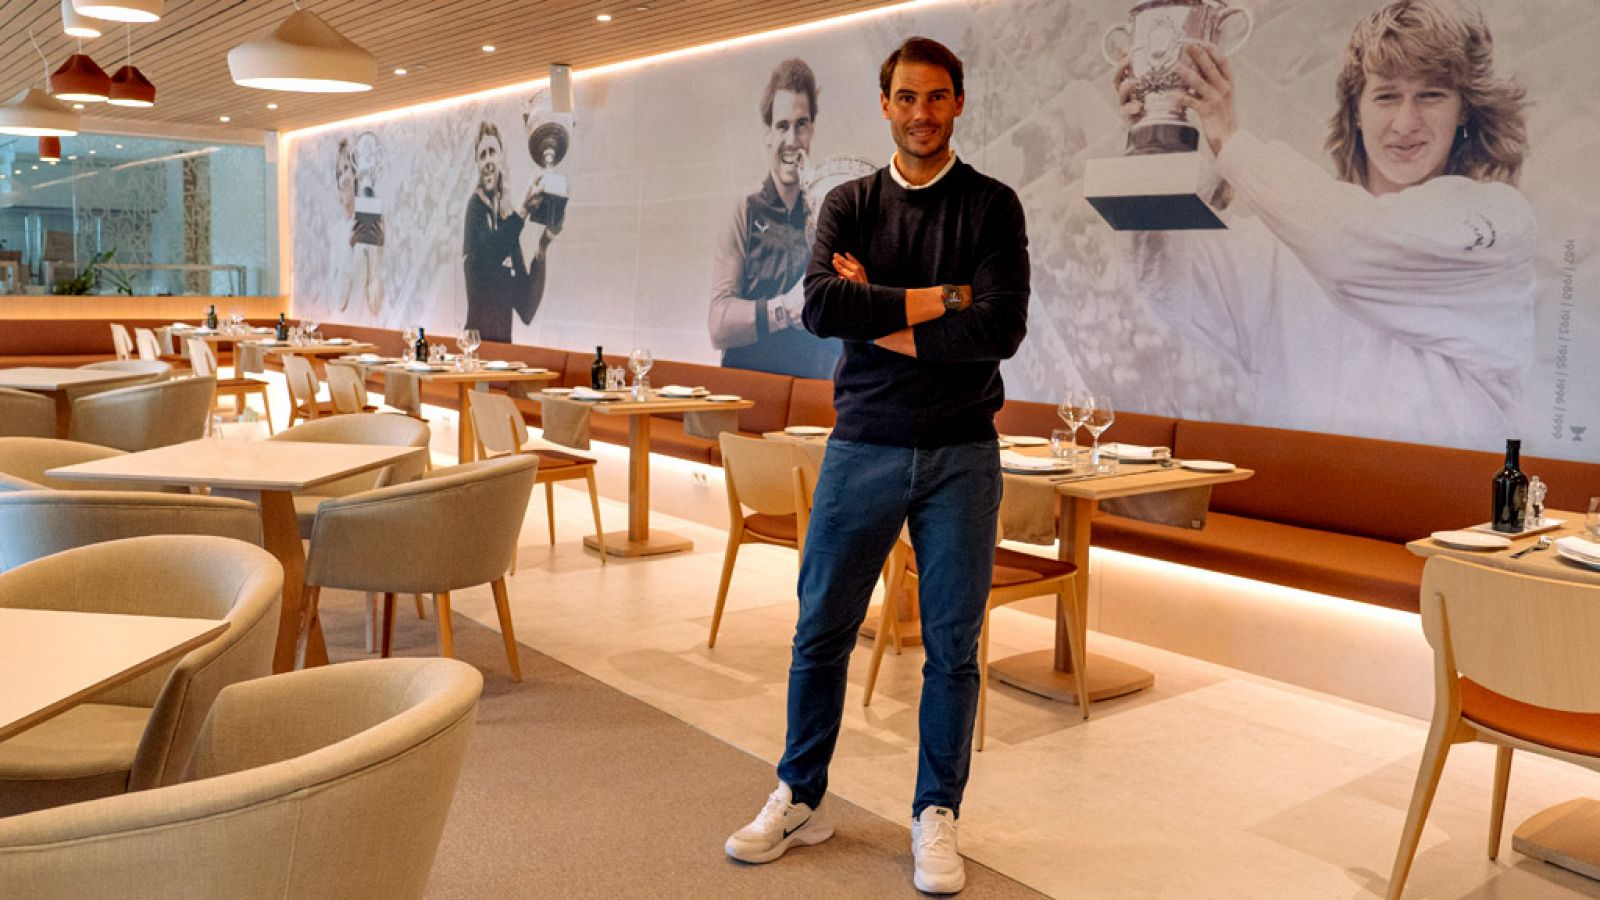 Roland Garros es el nombre del restaurante de Rafa Nadal en su academia de Manacor.